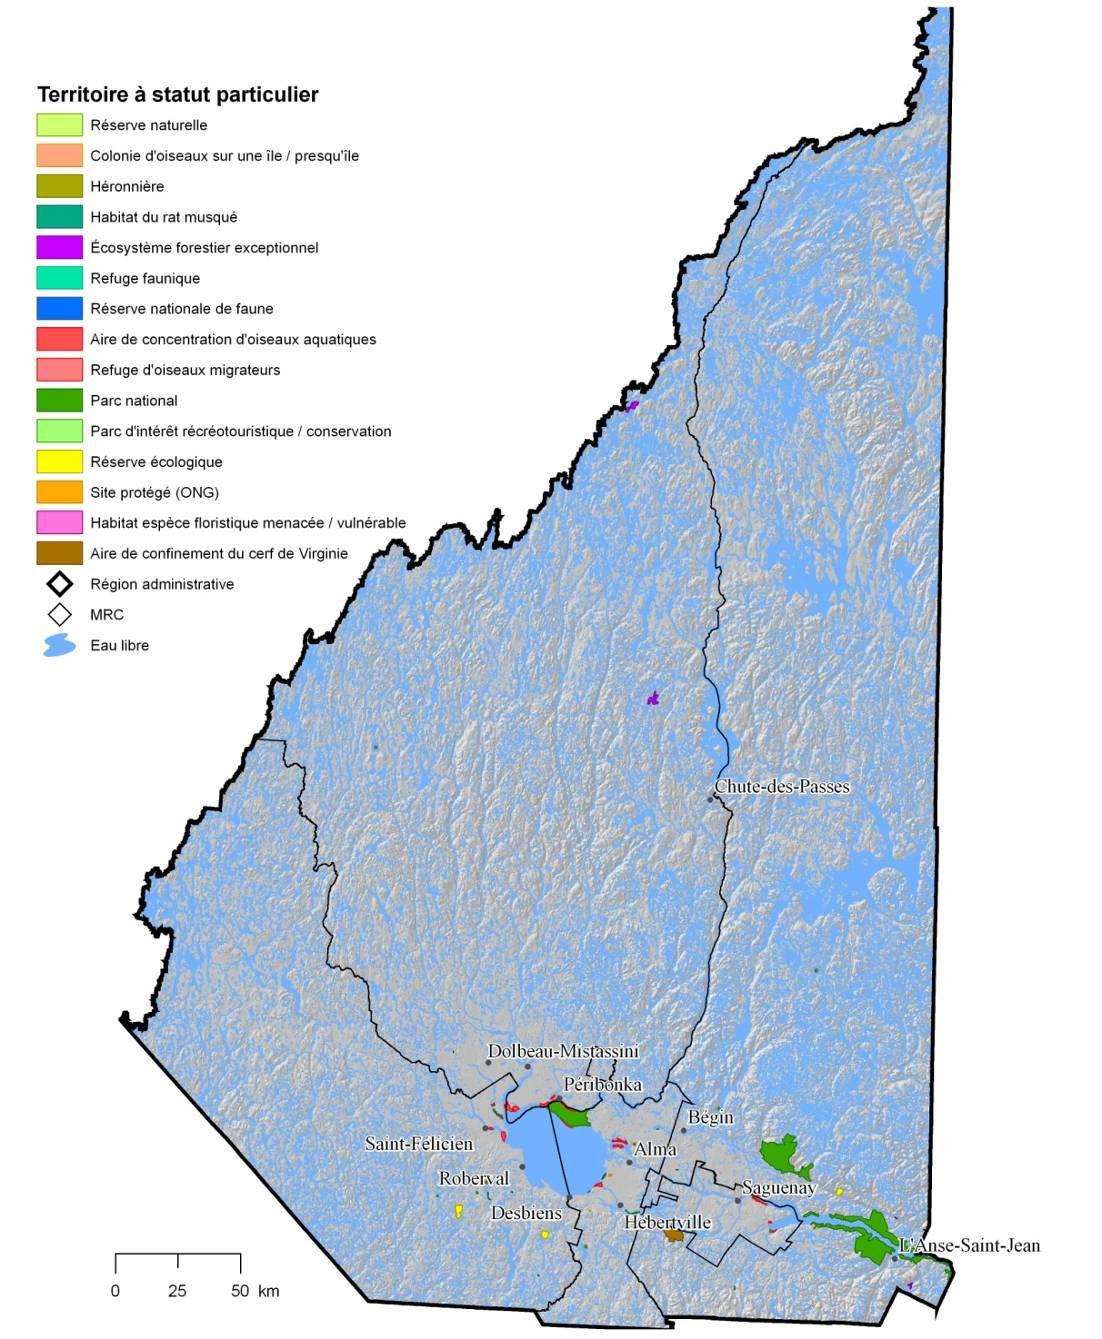 Territoires à statut particulier Maria-Chapdelaine Le Fjord-du-Saguenay Le Domaine-du-Roy Saguenay Lac-Saint-Jean-Est Territoires protégés EC : http://www.qc.ec.gc.